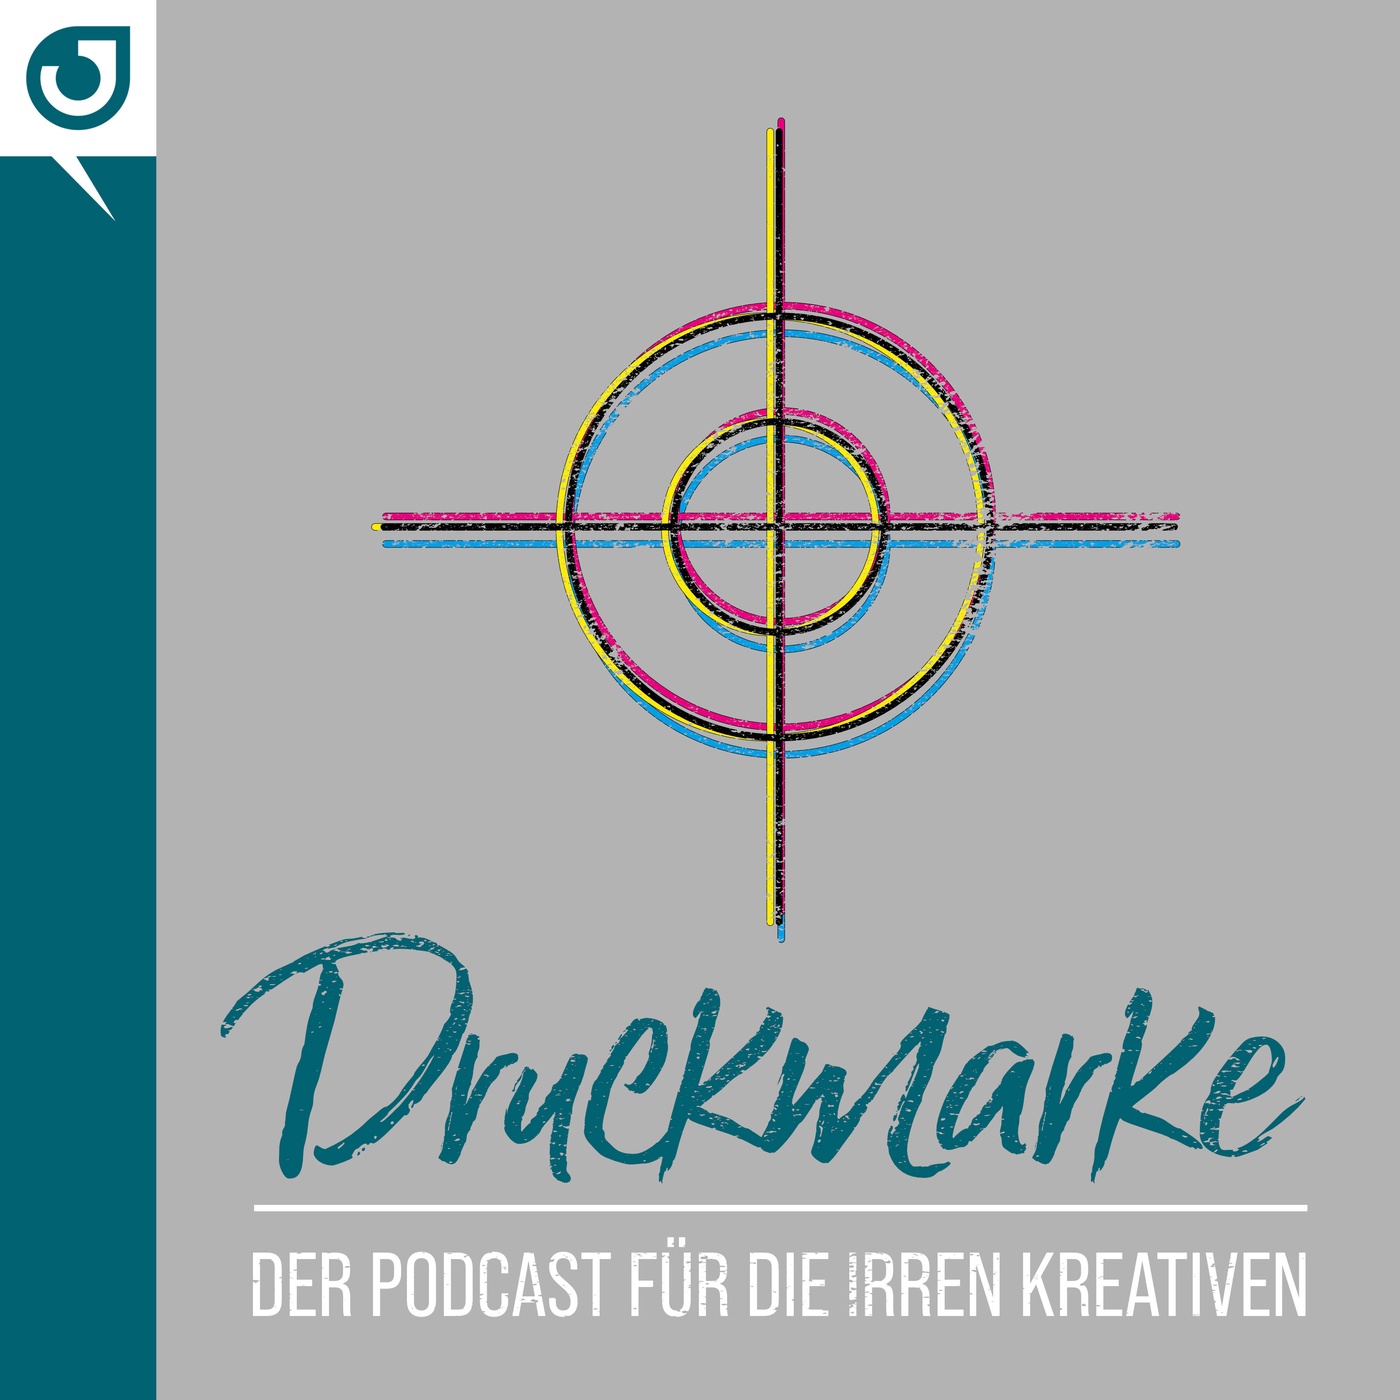 Druckmarke – Der Podcast für die irren Kreativen